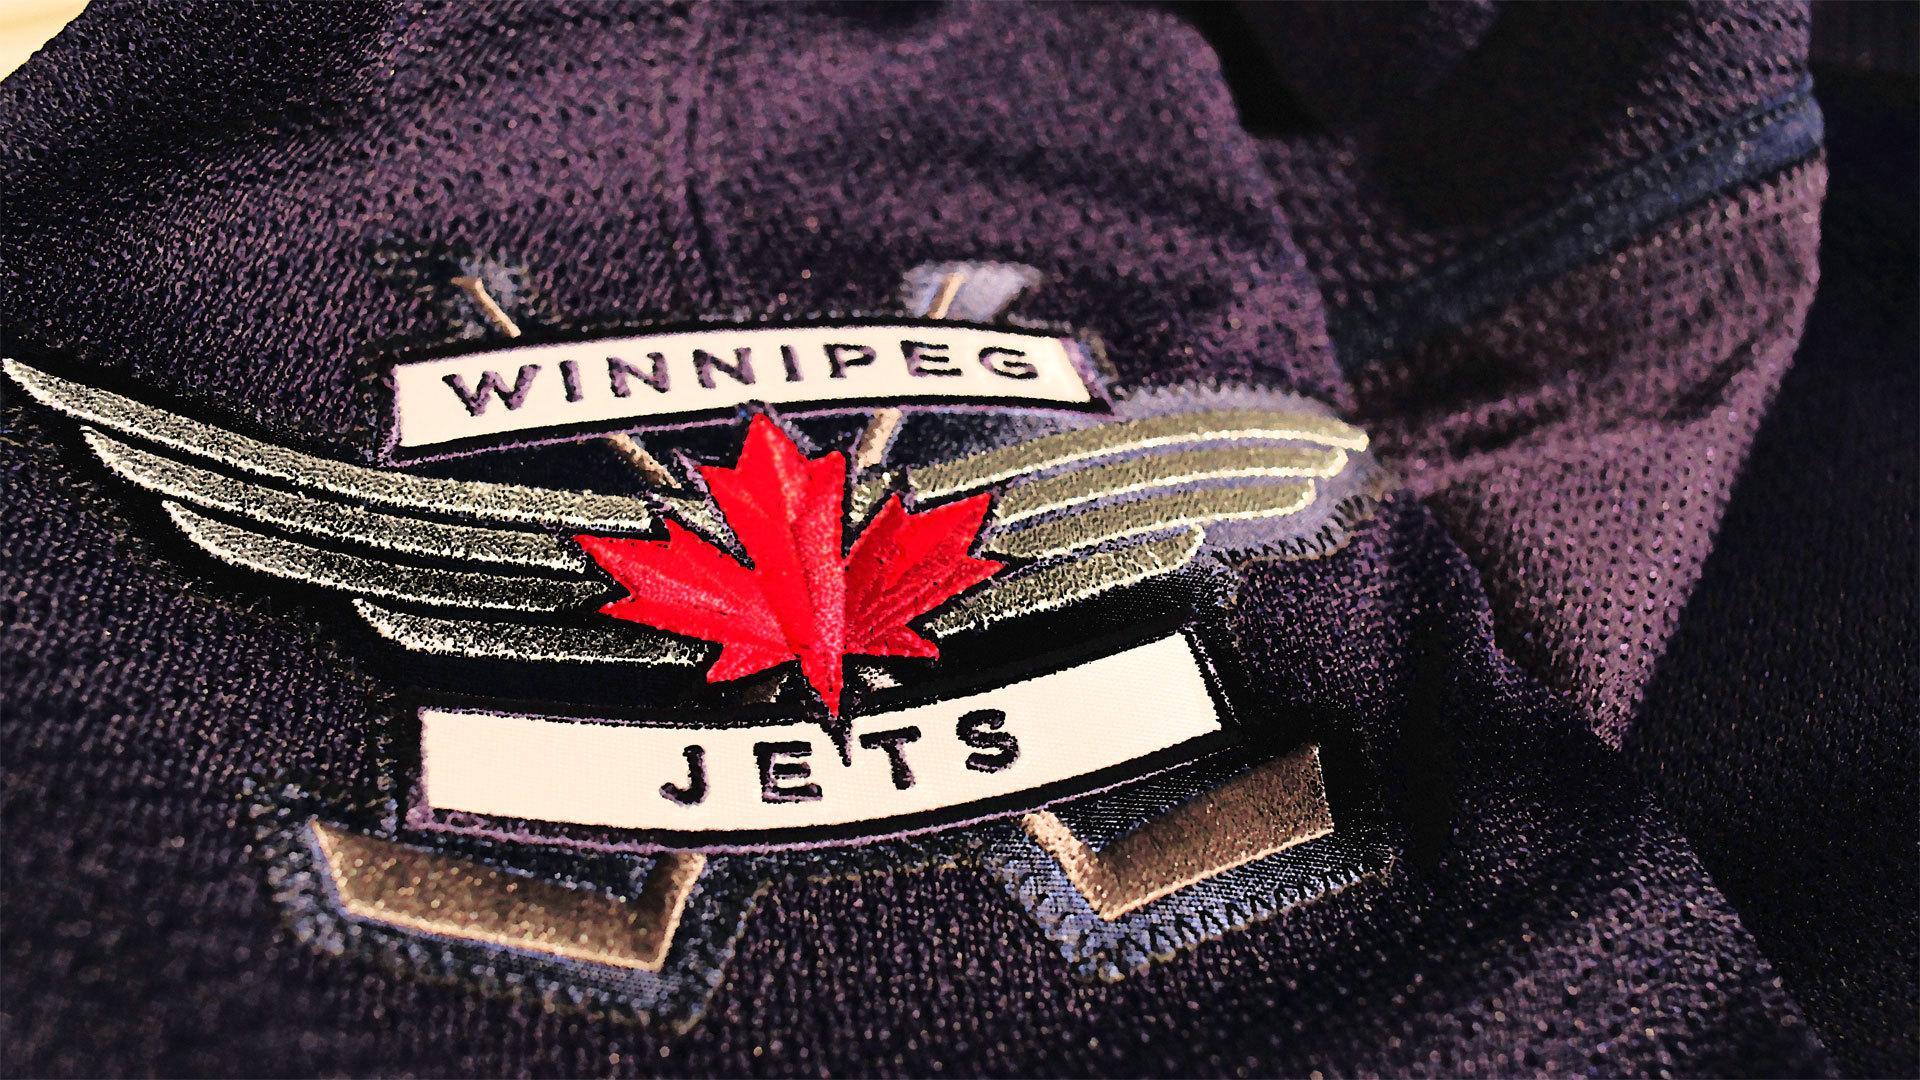 Winnipeg Jets Wallpaper M2Z 0.6 Mb